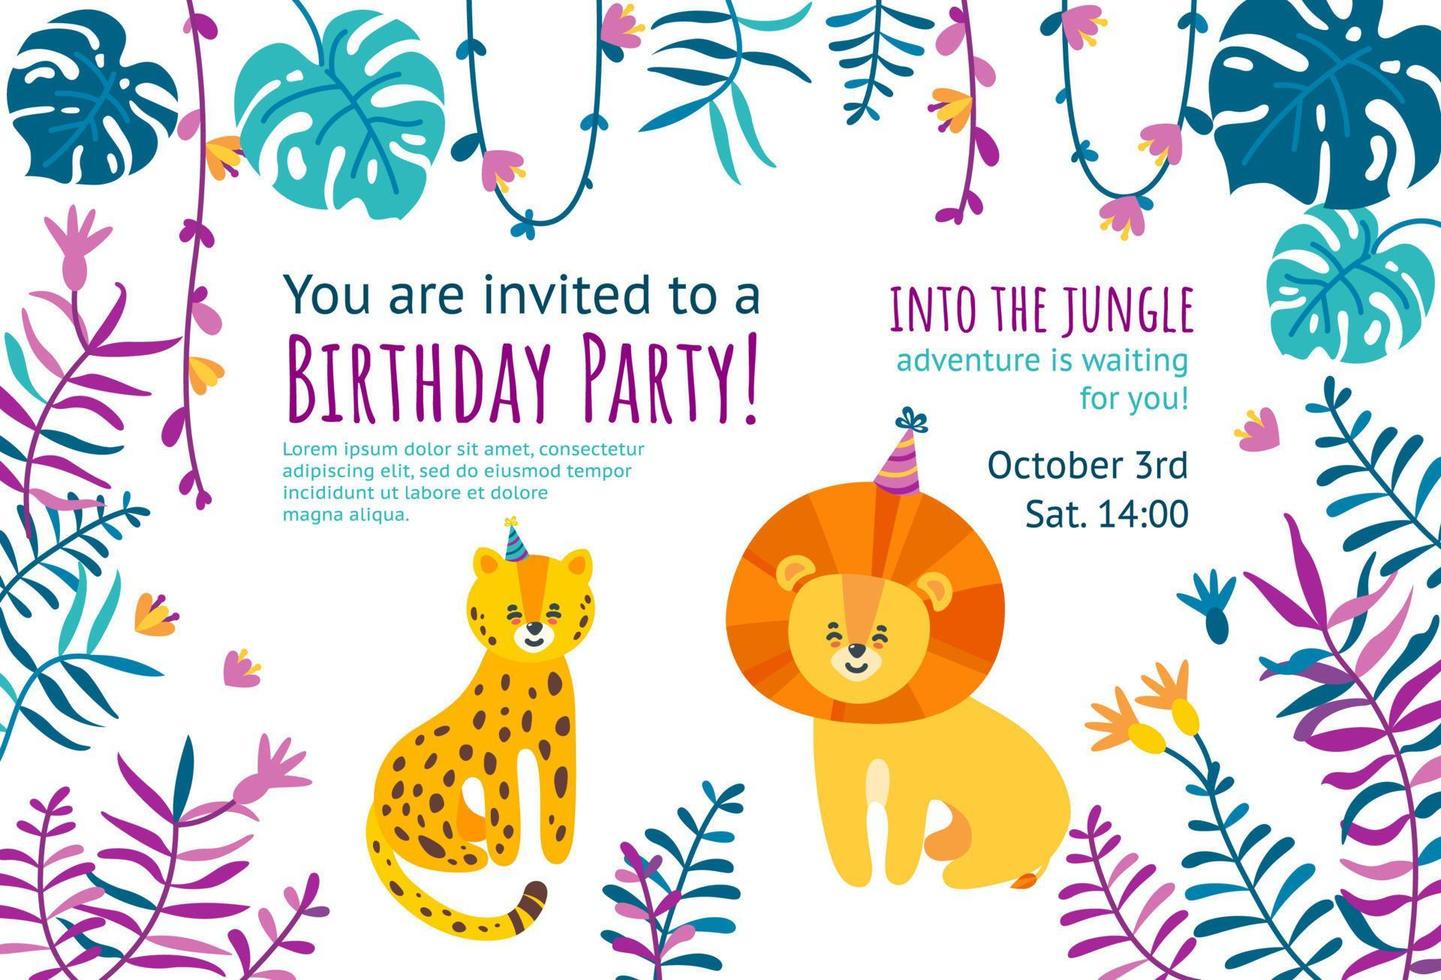 verjaardag uitnodiging kaart met schattig luipaard en leeuw. kant en klaar uitnodiging ontwerp voor verjaardag partijen. vector illustratie met oerwoud bladeren kader.